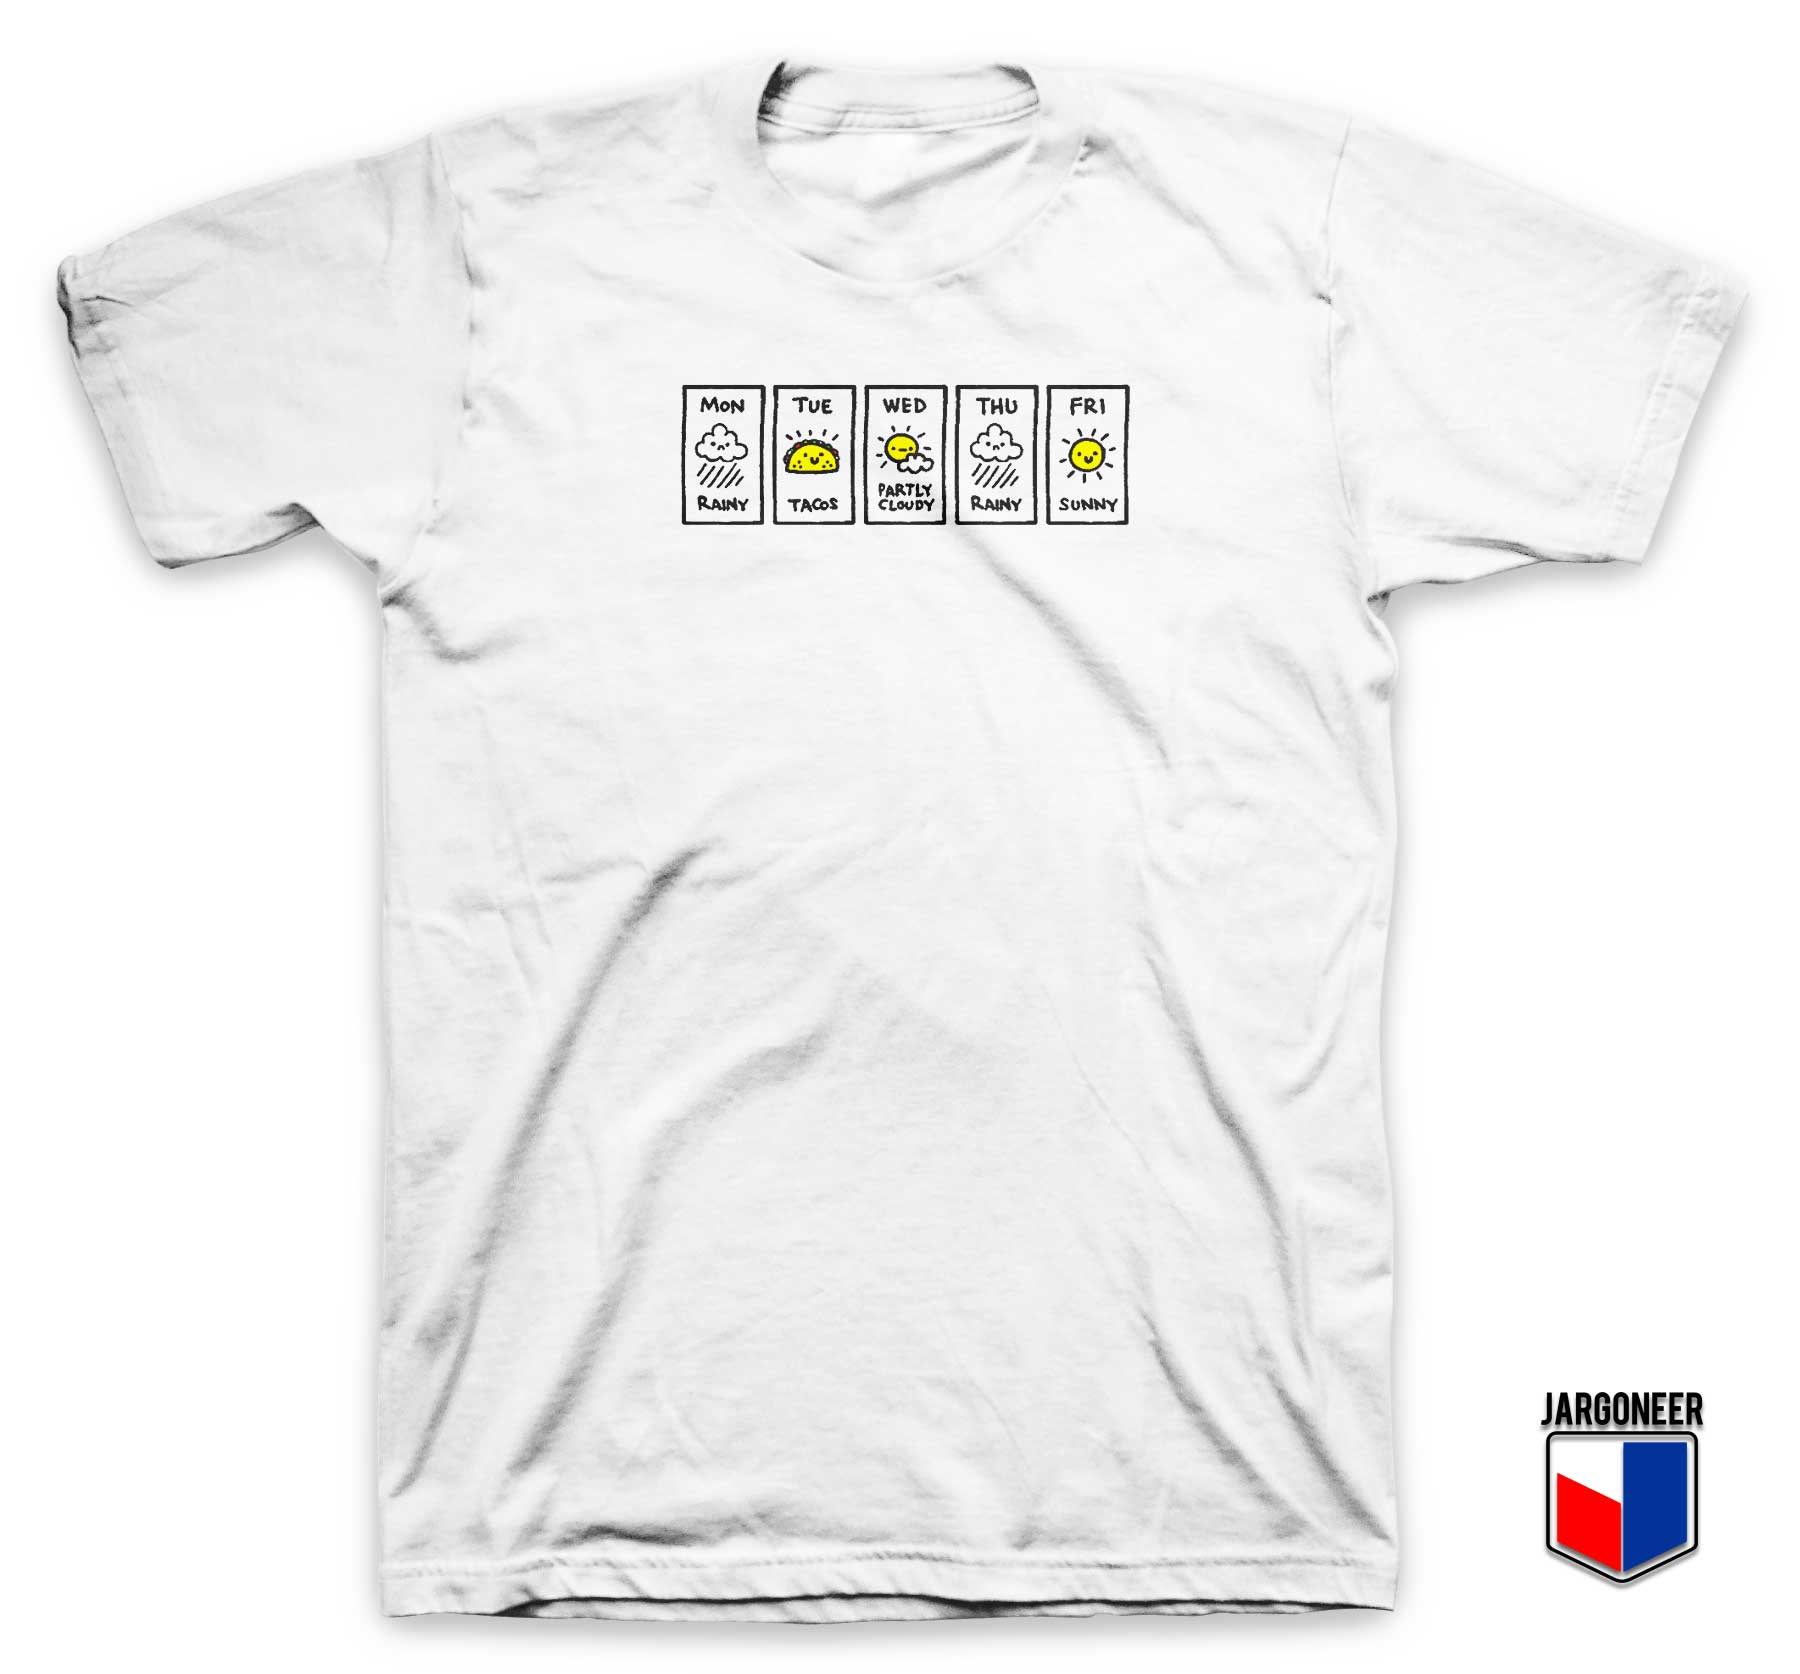 Party Tacos Weather T Shirt - Shop Unique Graphic Cool Shirt Designs